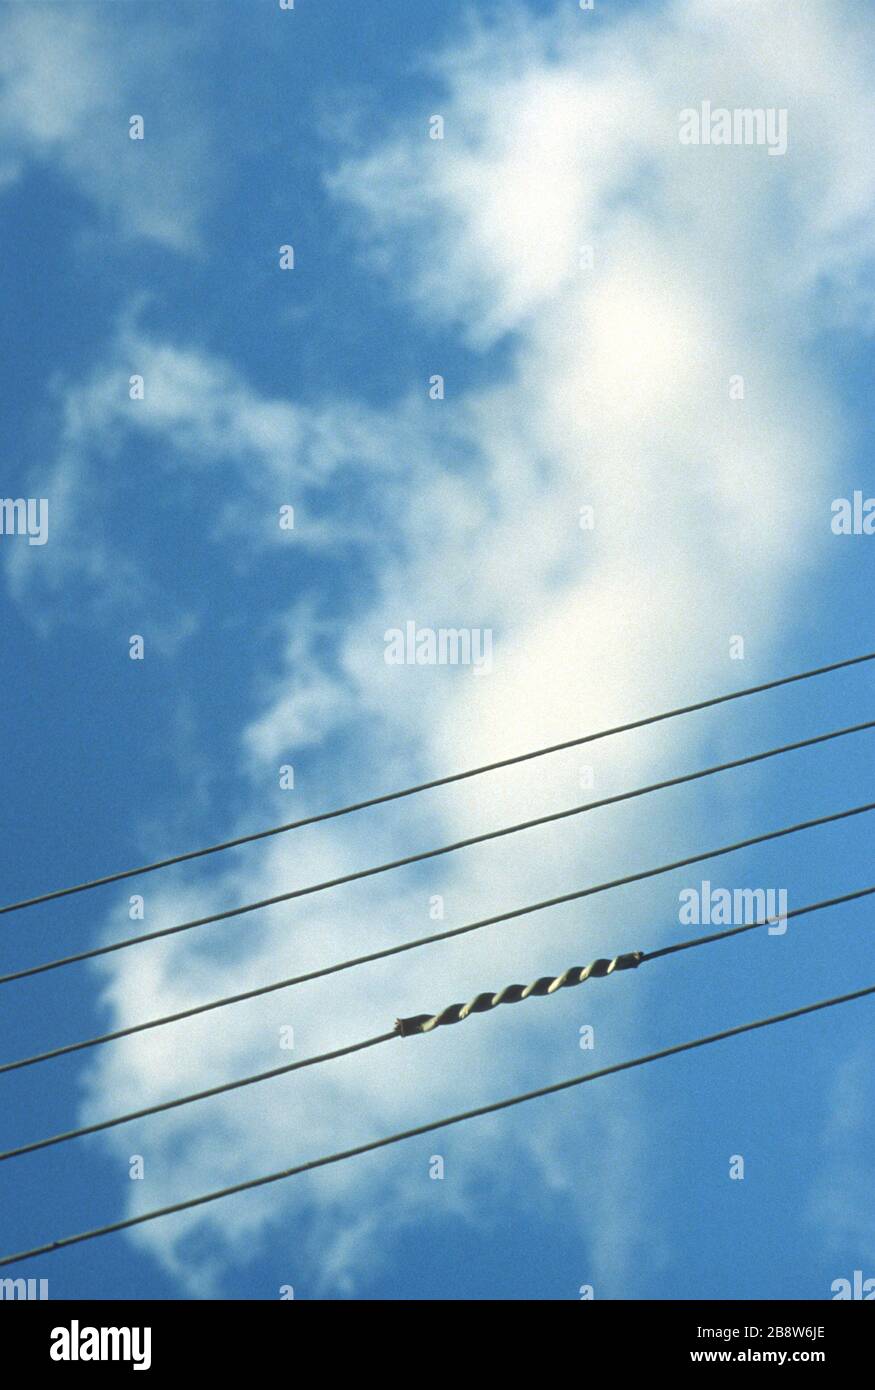 Cinque fili di telefono / elettricità / telegrafo isolati contro un cielo blu assomiglia a staves di musica. Metti le tue note sullo sfondo. Foto Stock